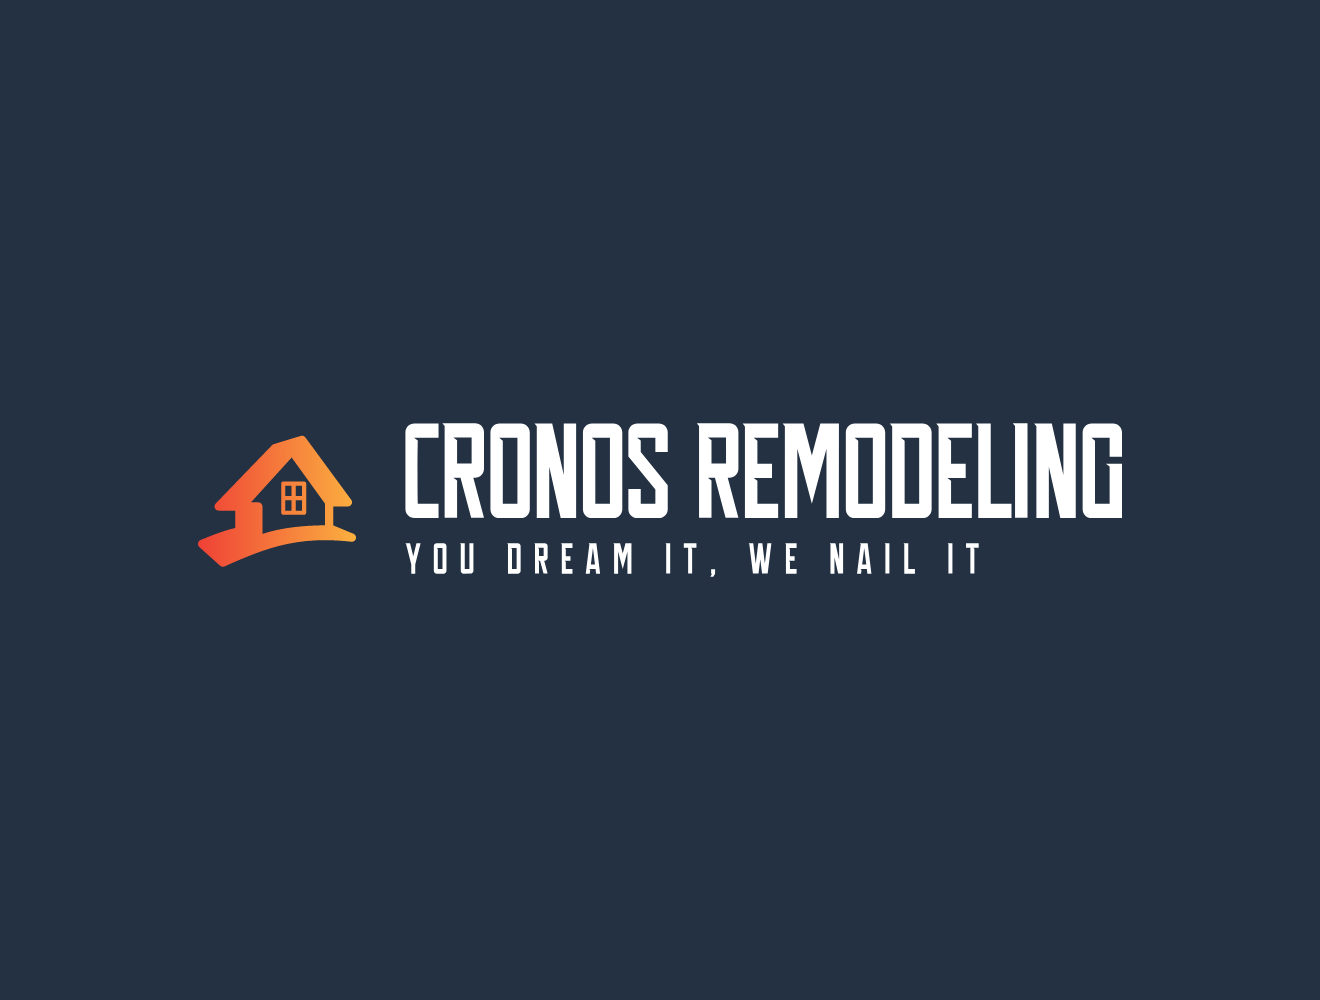 Cronos Remodeling Logo